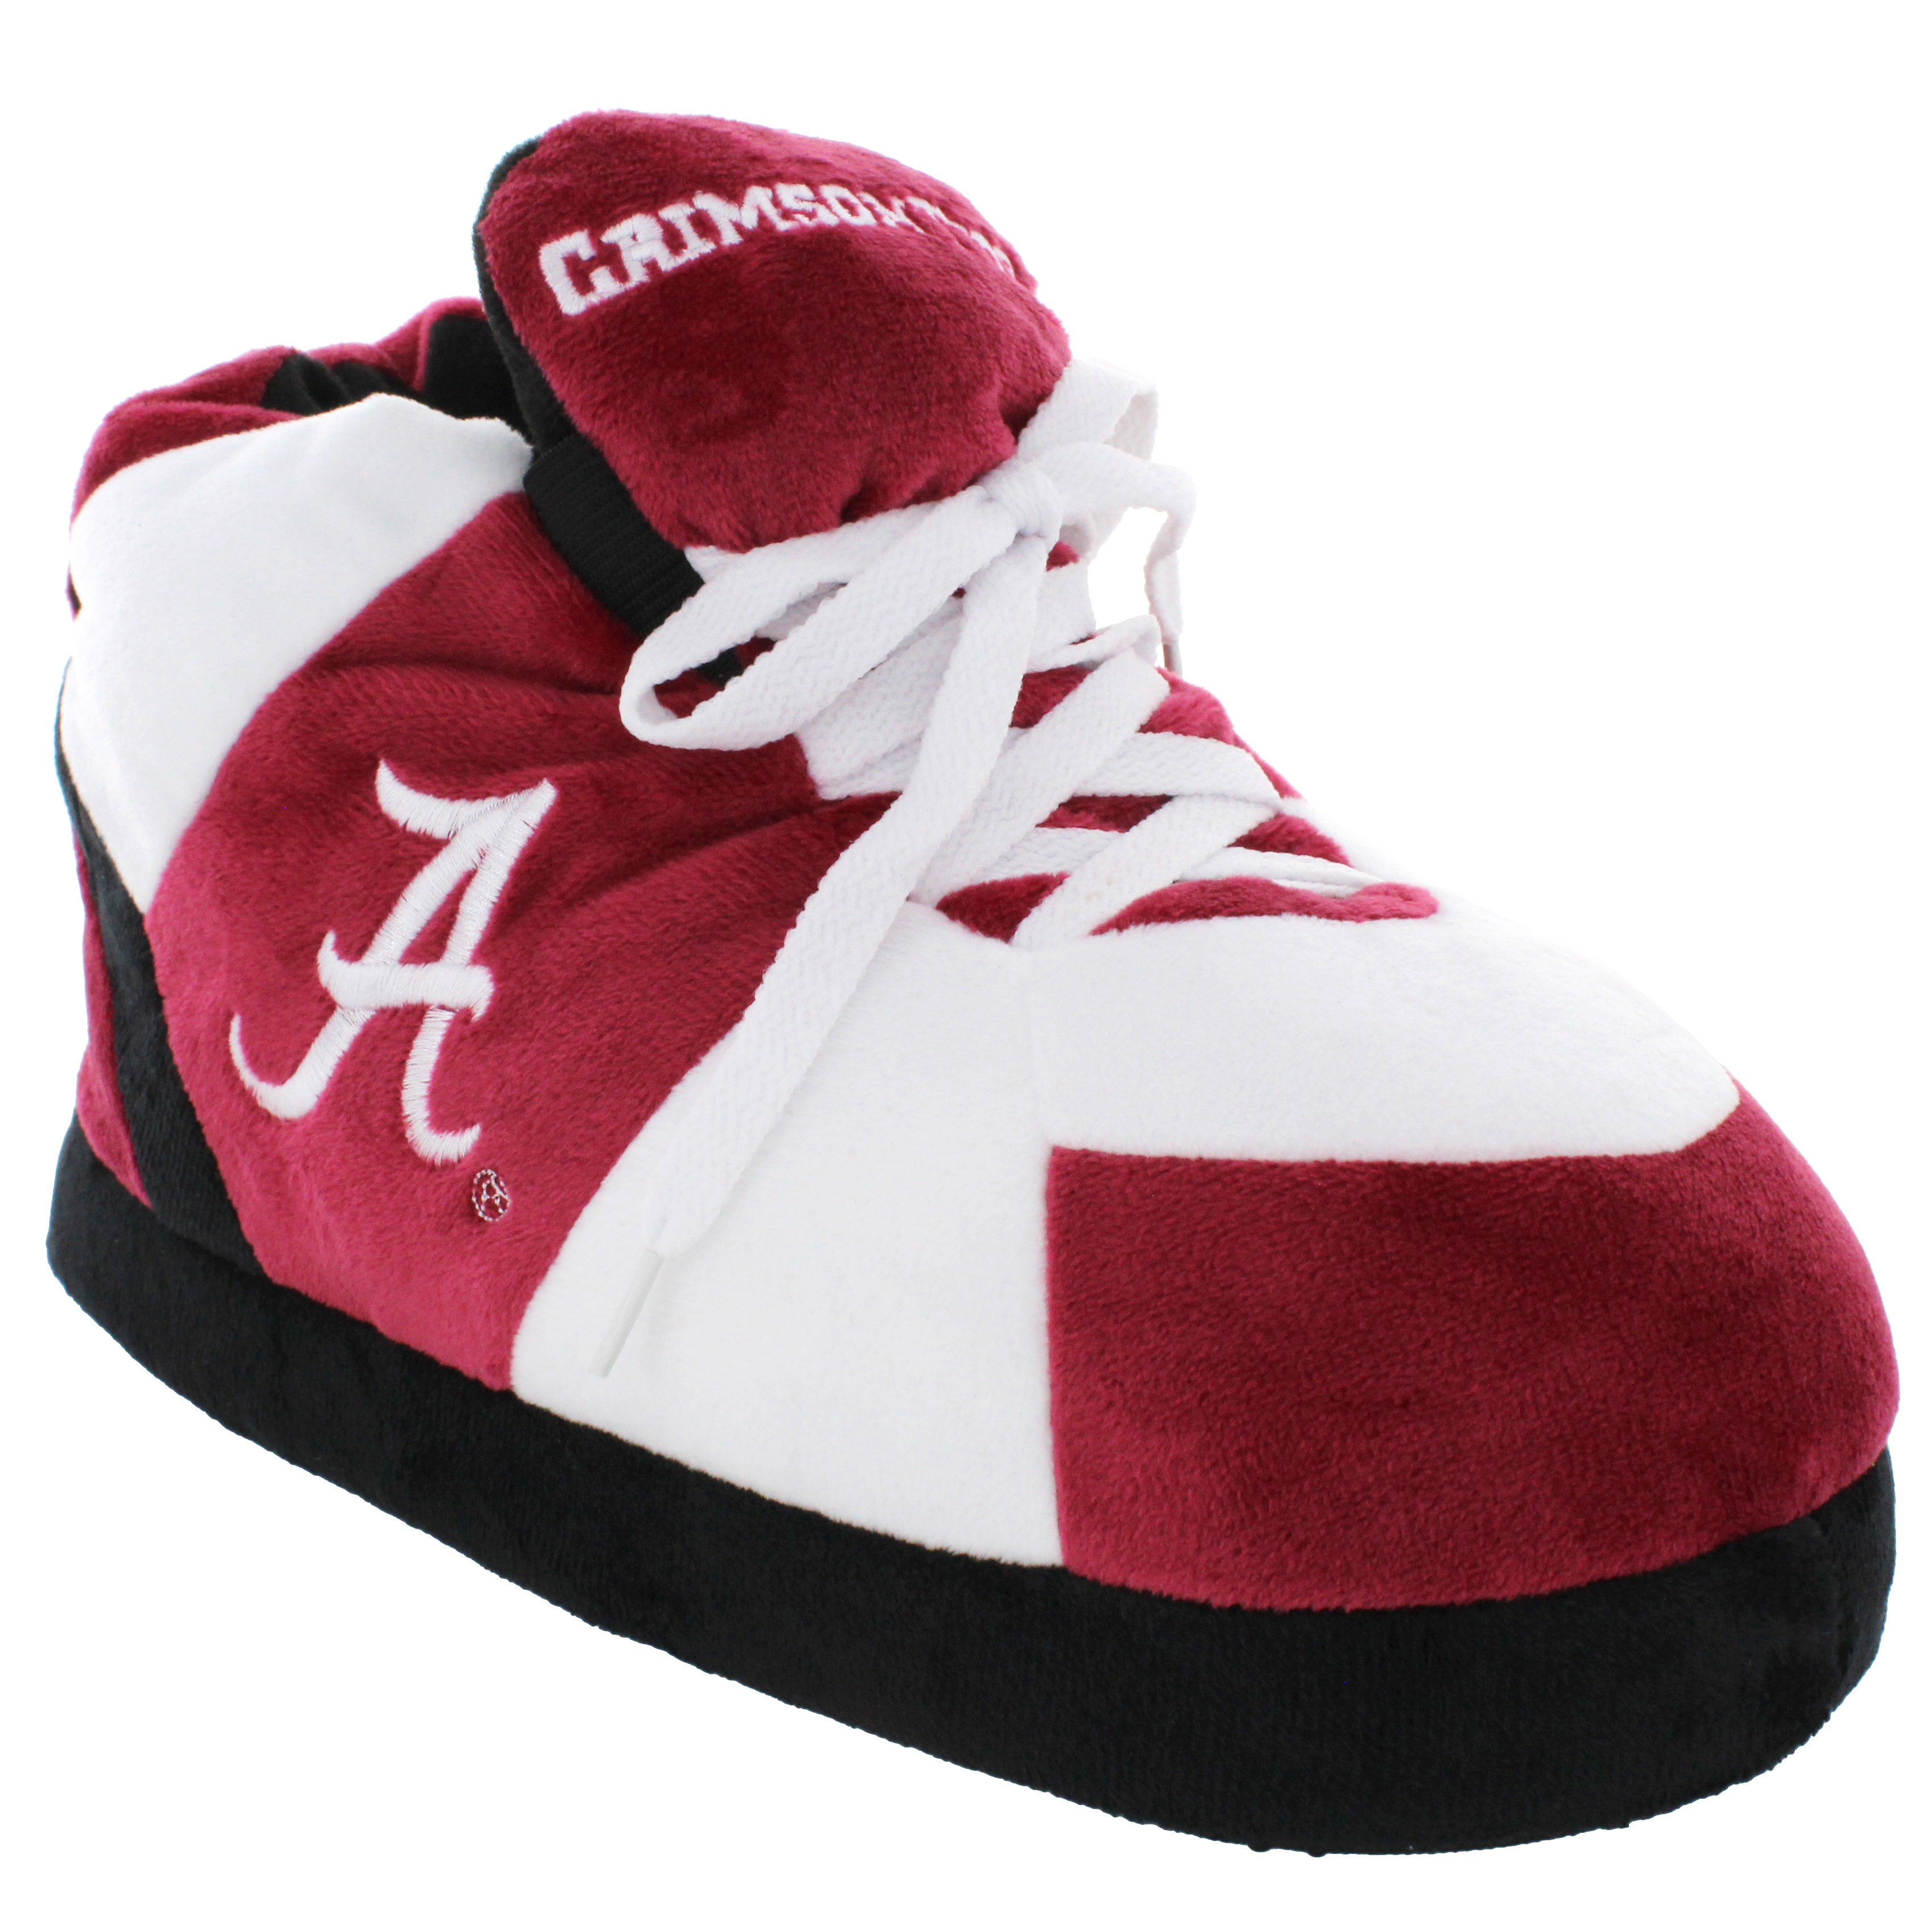 Alabama Crimson Tide Original Comfy Feet Sneaker Slipper, Large - image 1 of 8